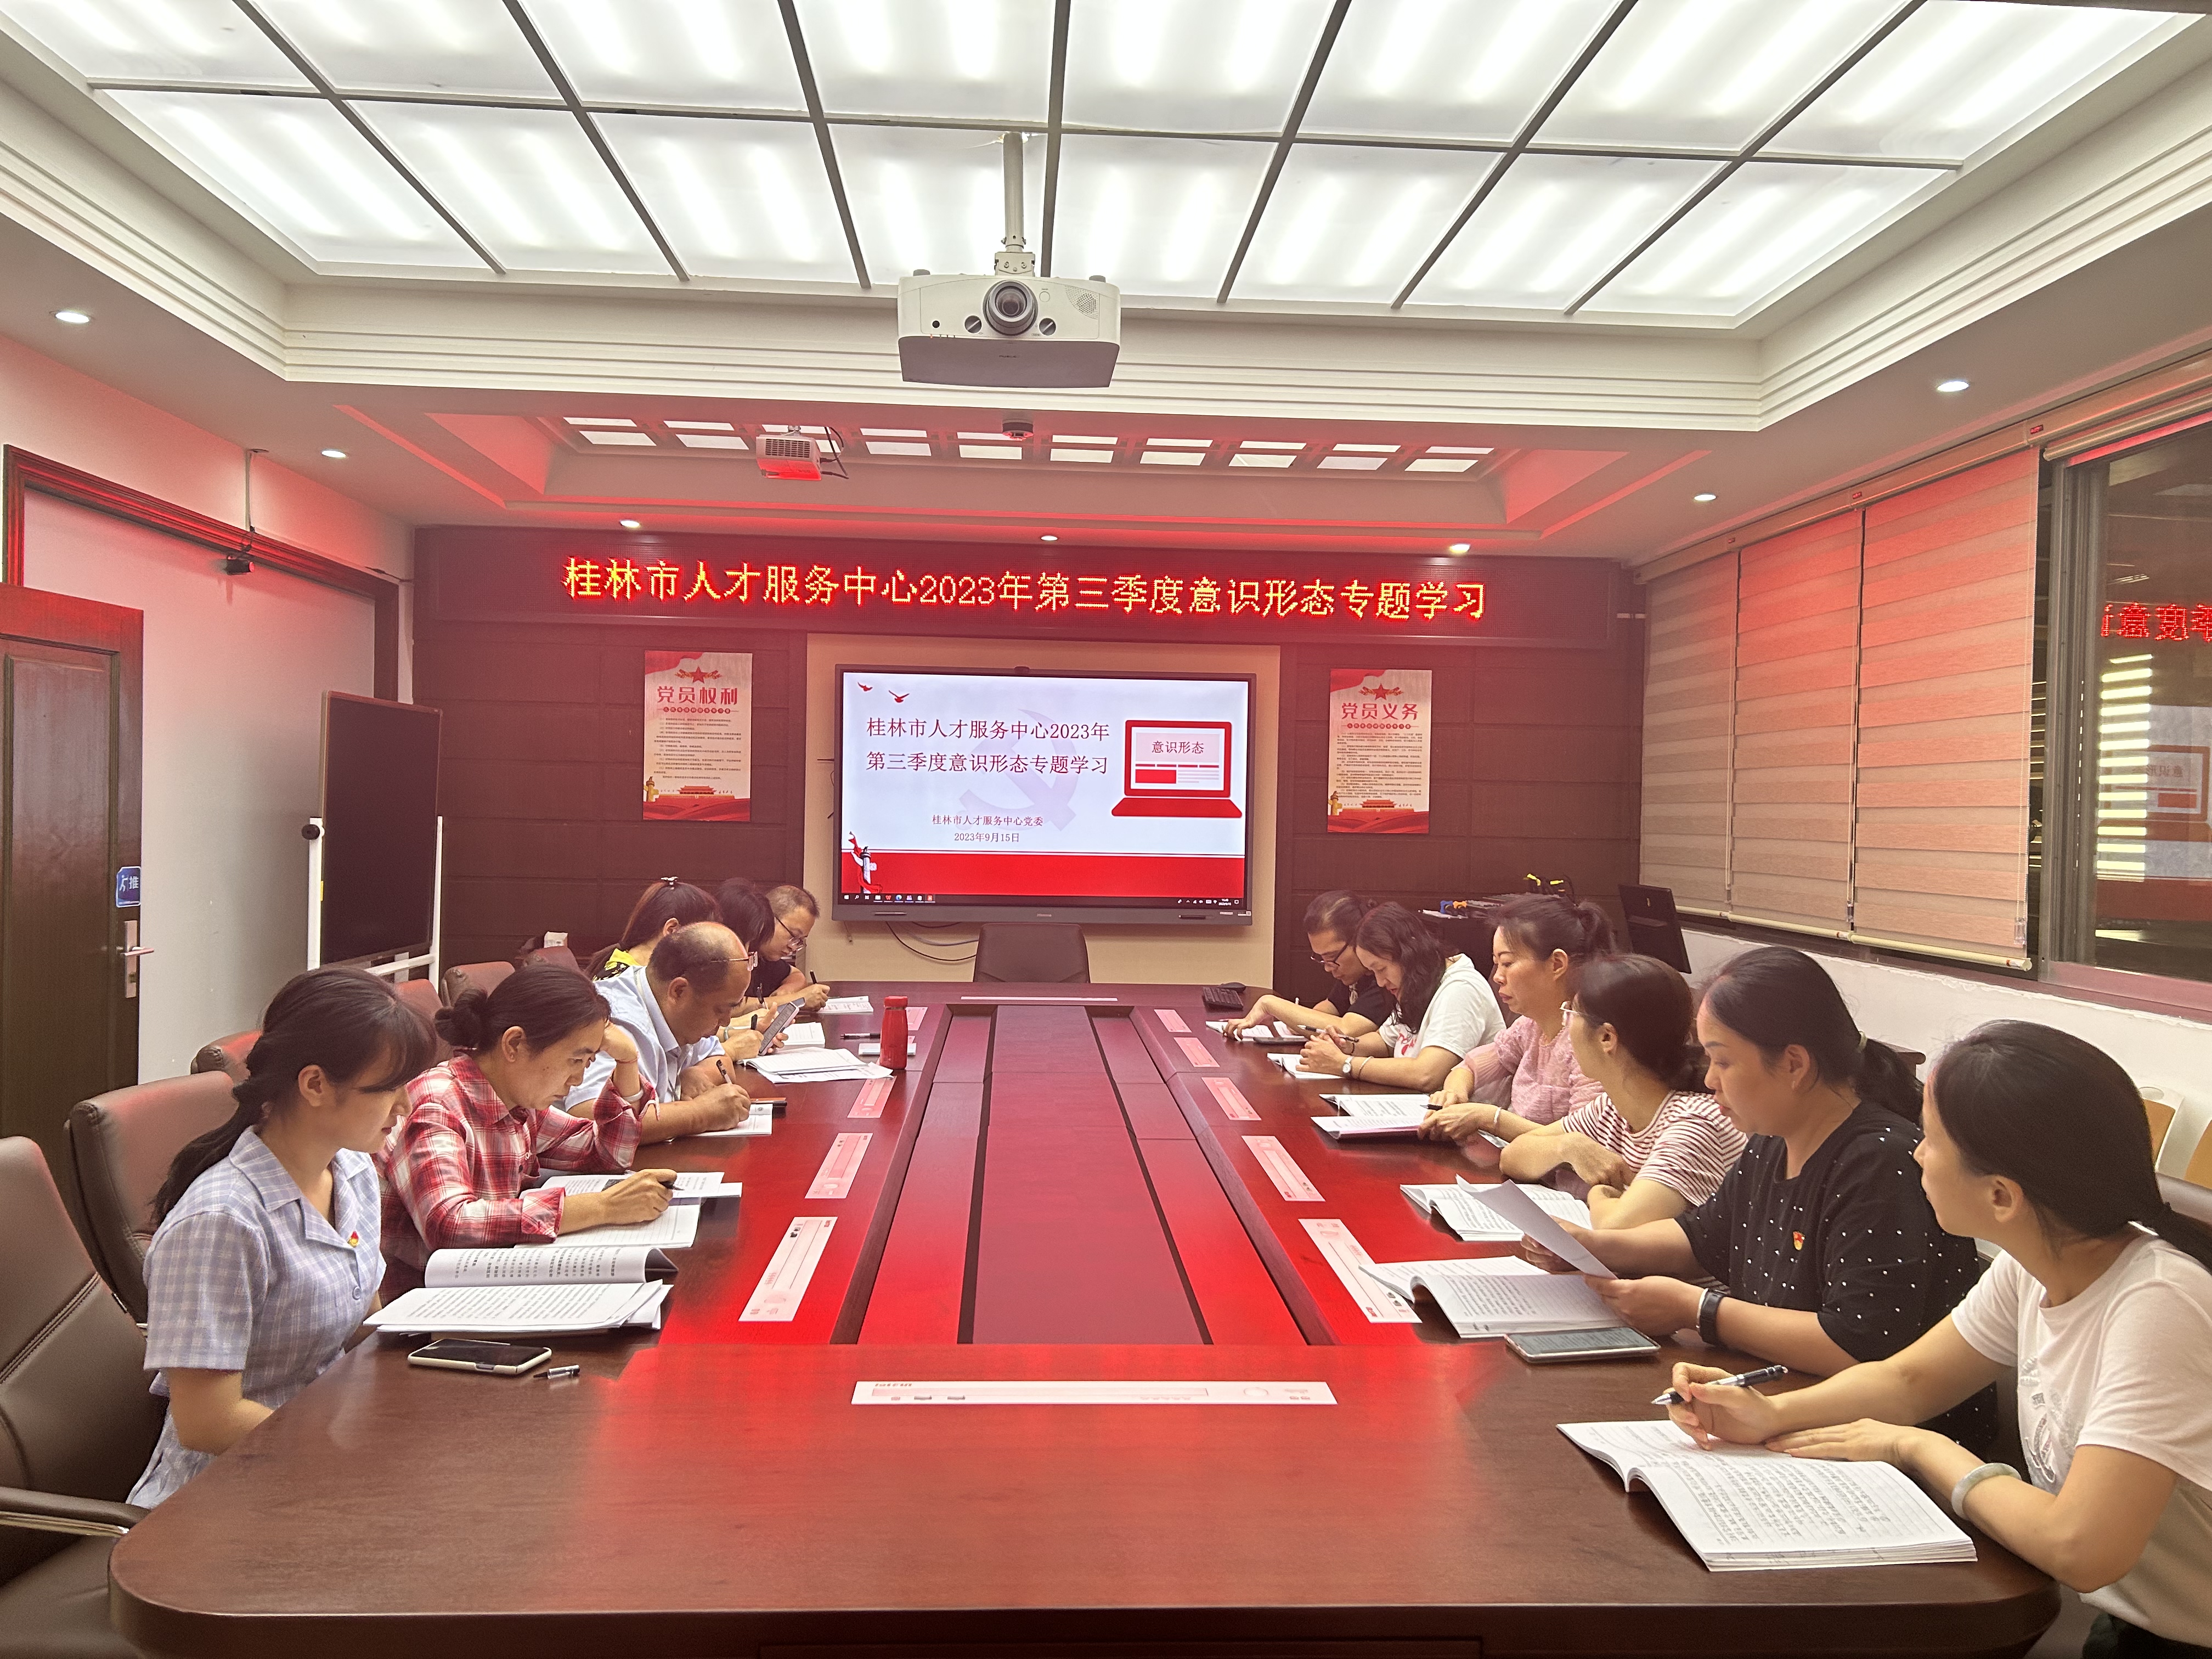 桂林市人才服务中心2023年第三季度意识形态专题学习